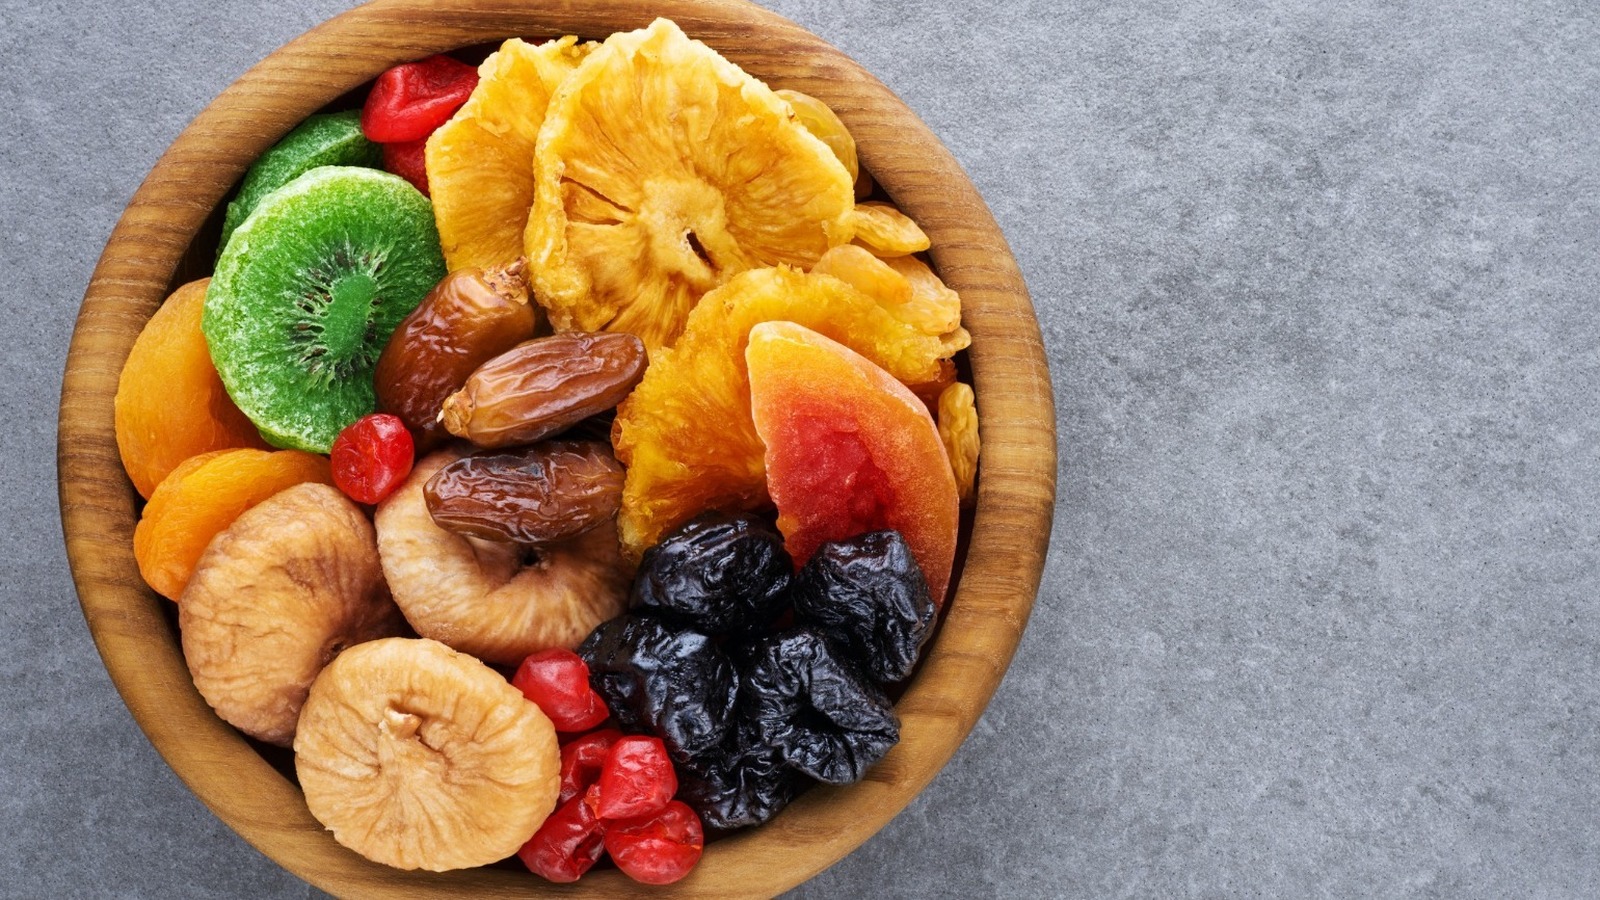 Is eating dried fruit healthy? - Harvard Health